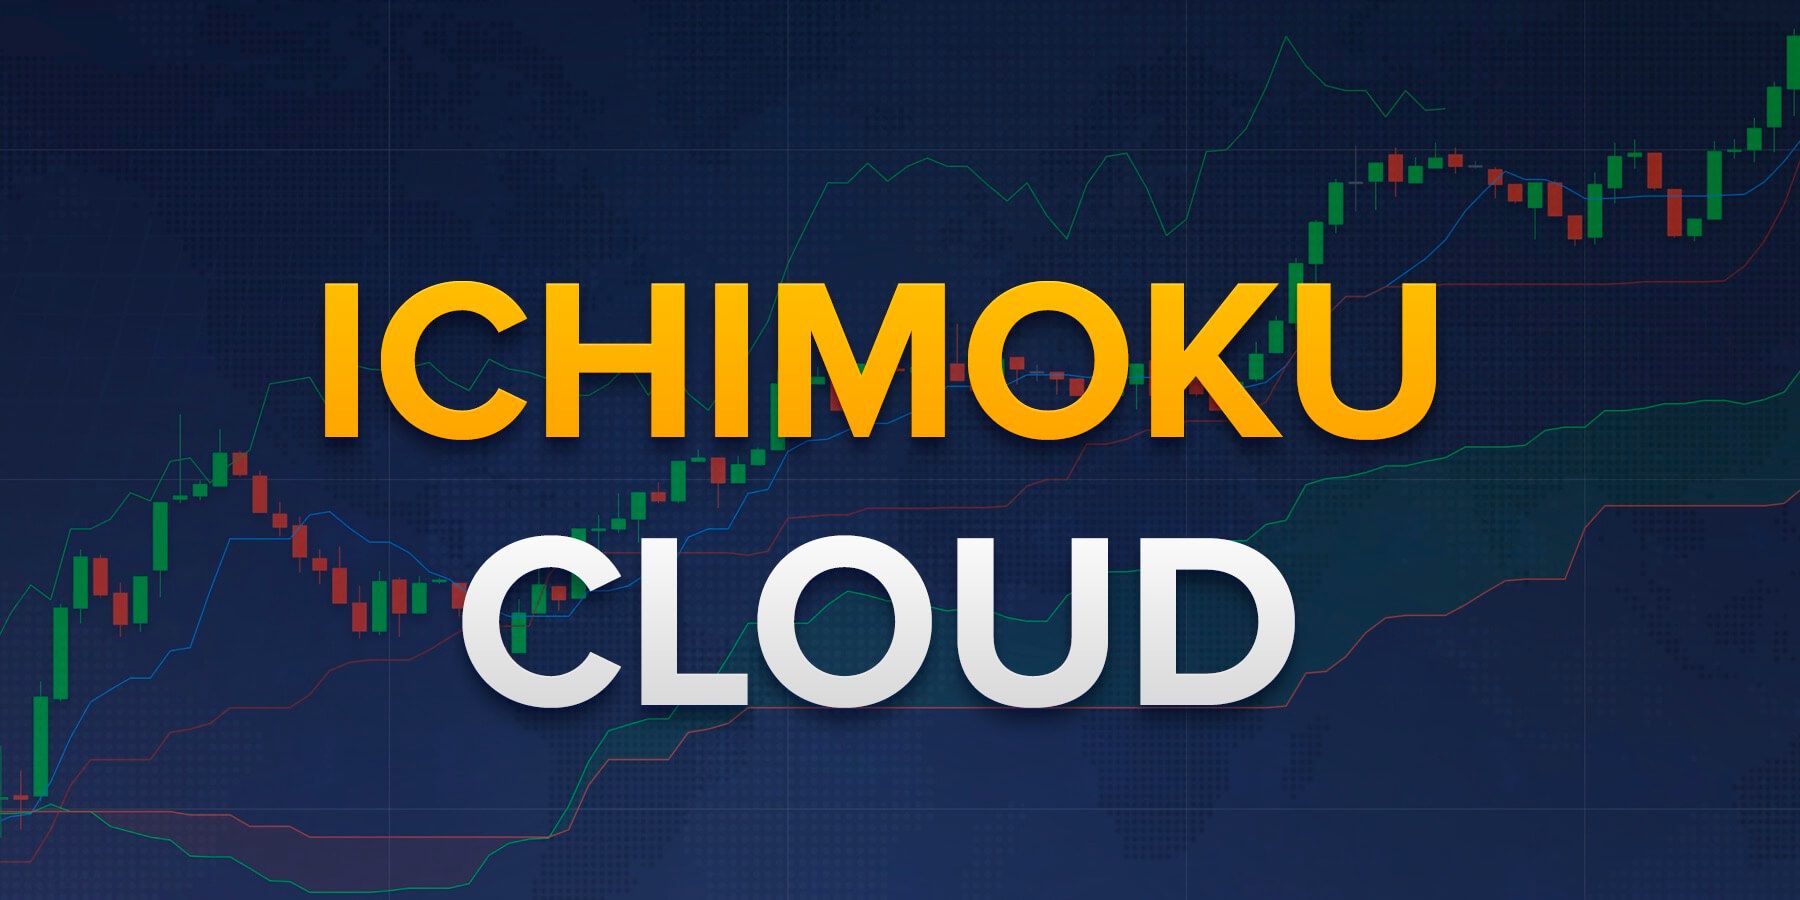 Ichimoku cloud